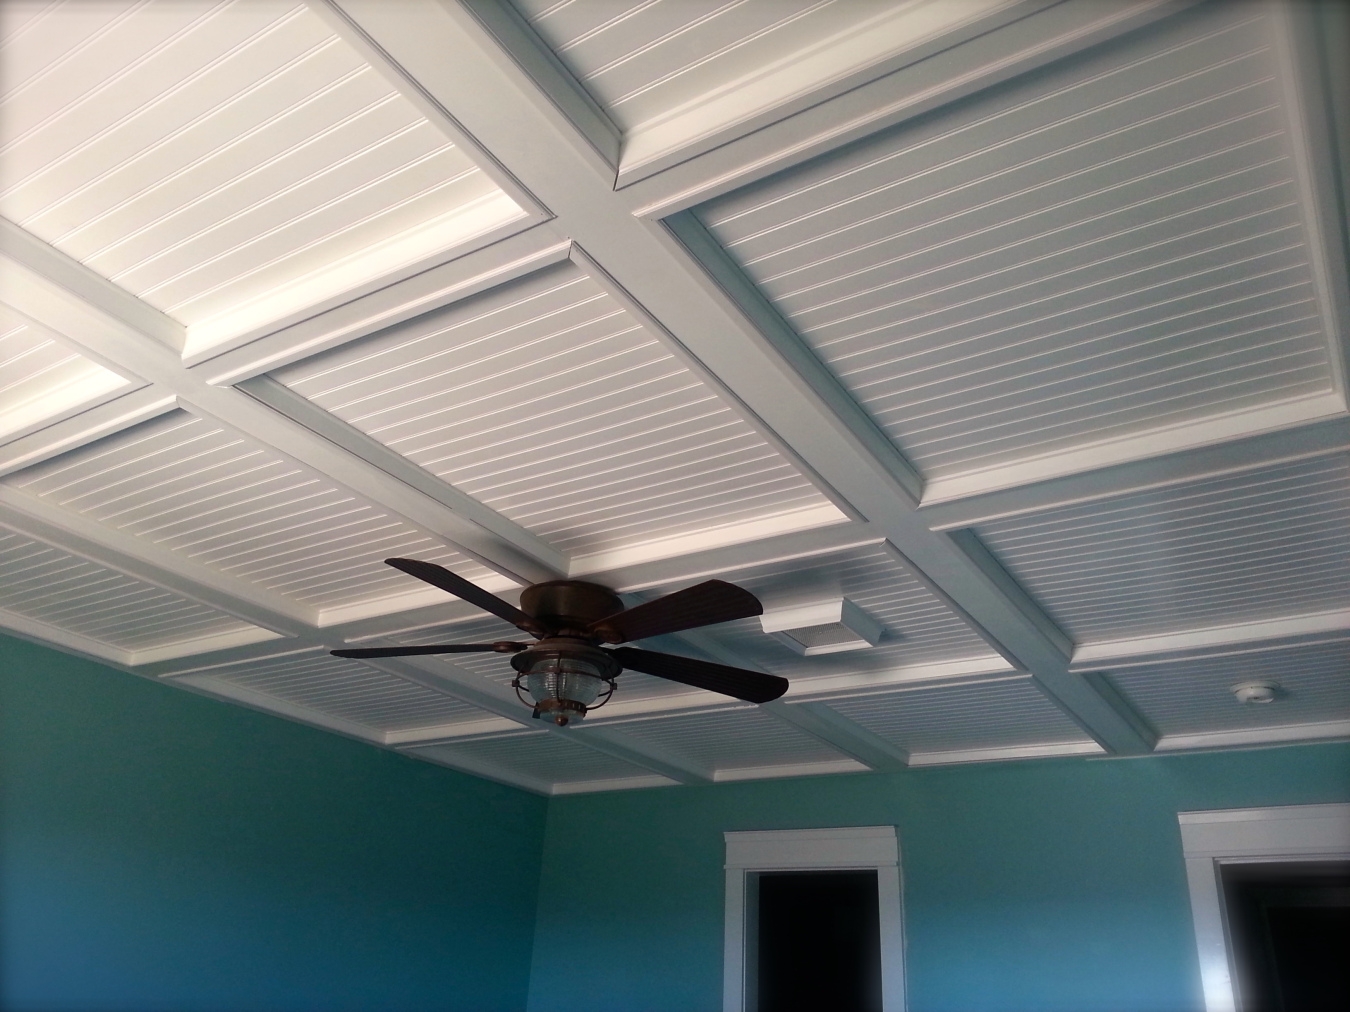 Drop Ceiling Tile Exhaust Fandrop ceiling tile exhaust fan 2x2 ceiling tile exhaust fan ceiling